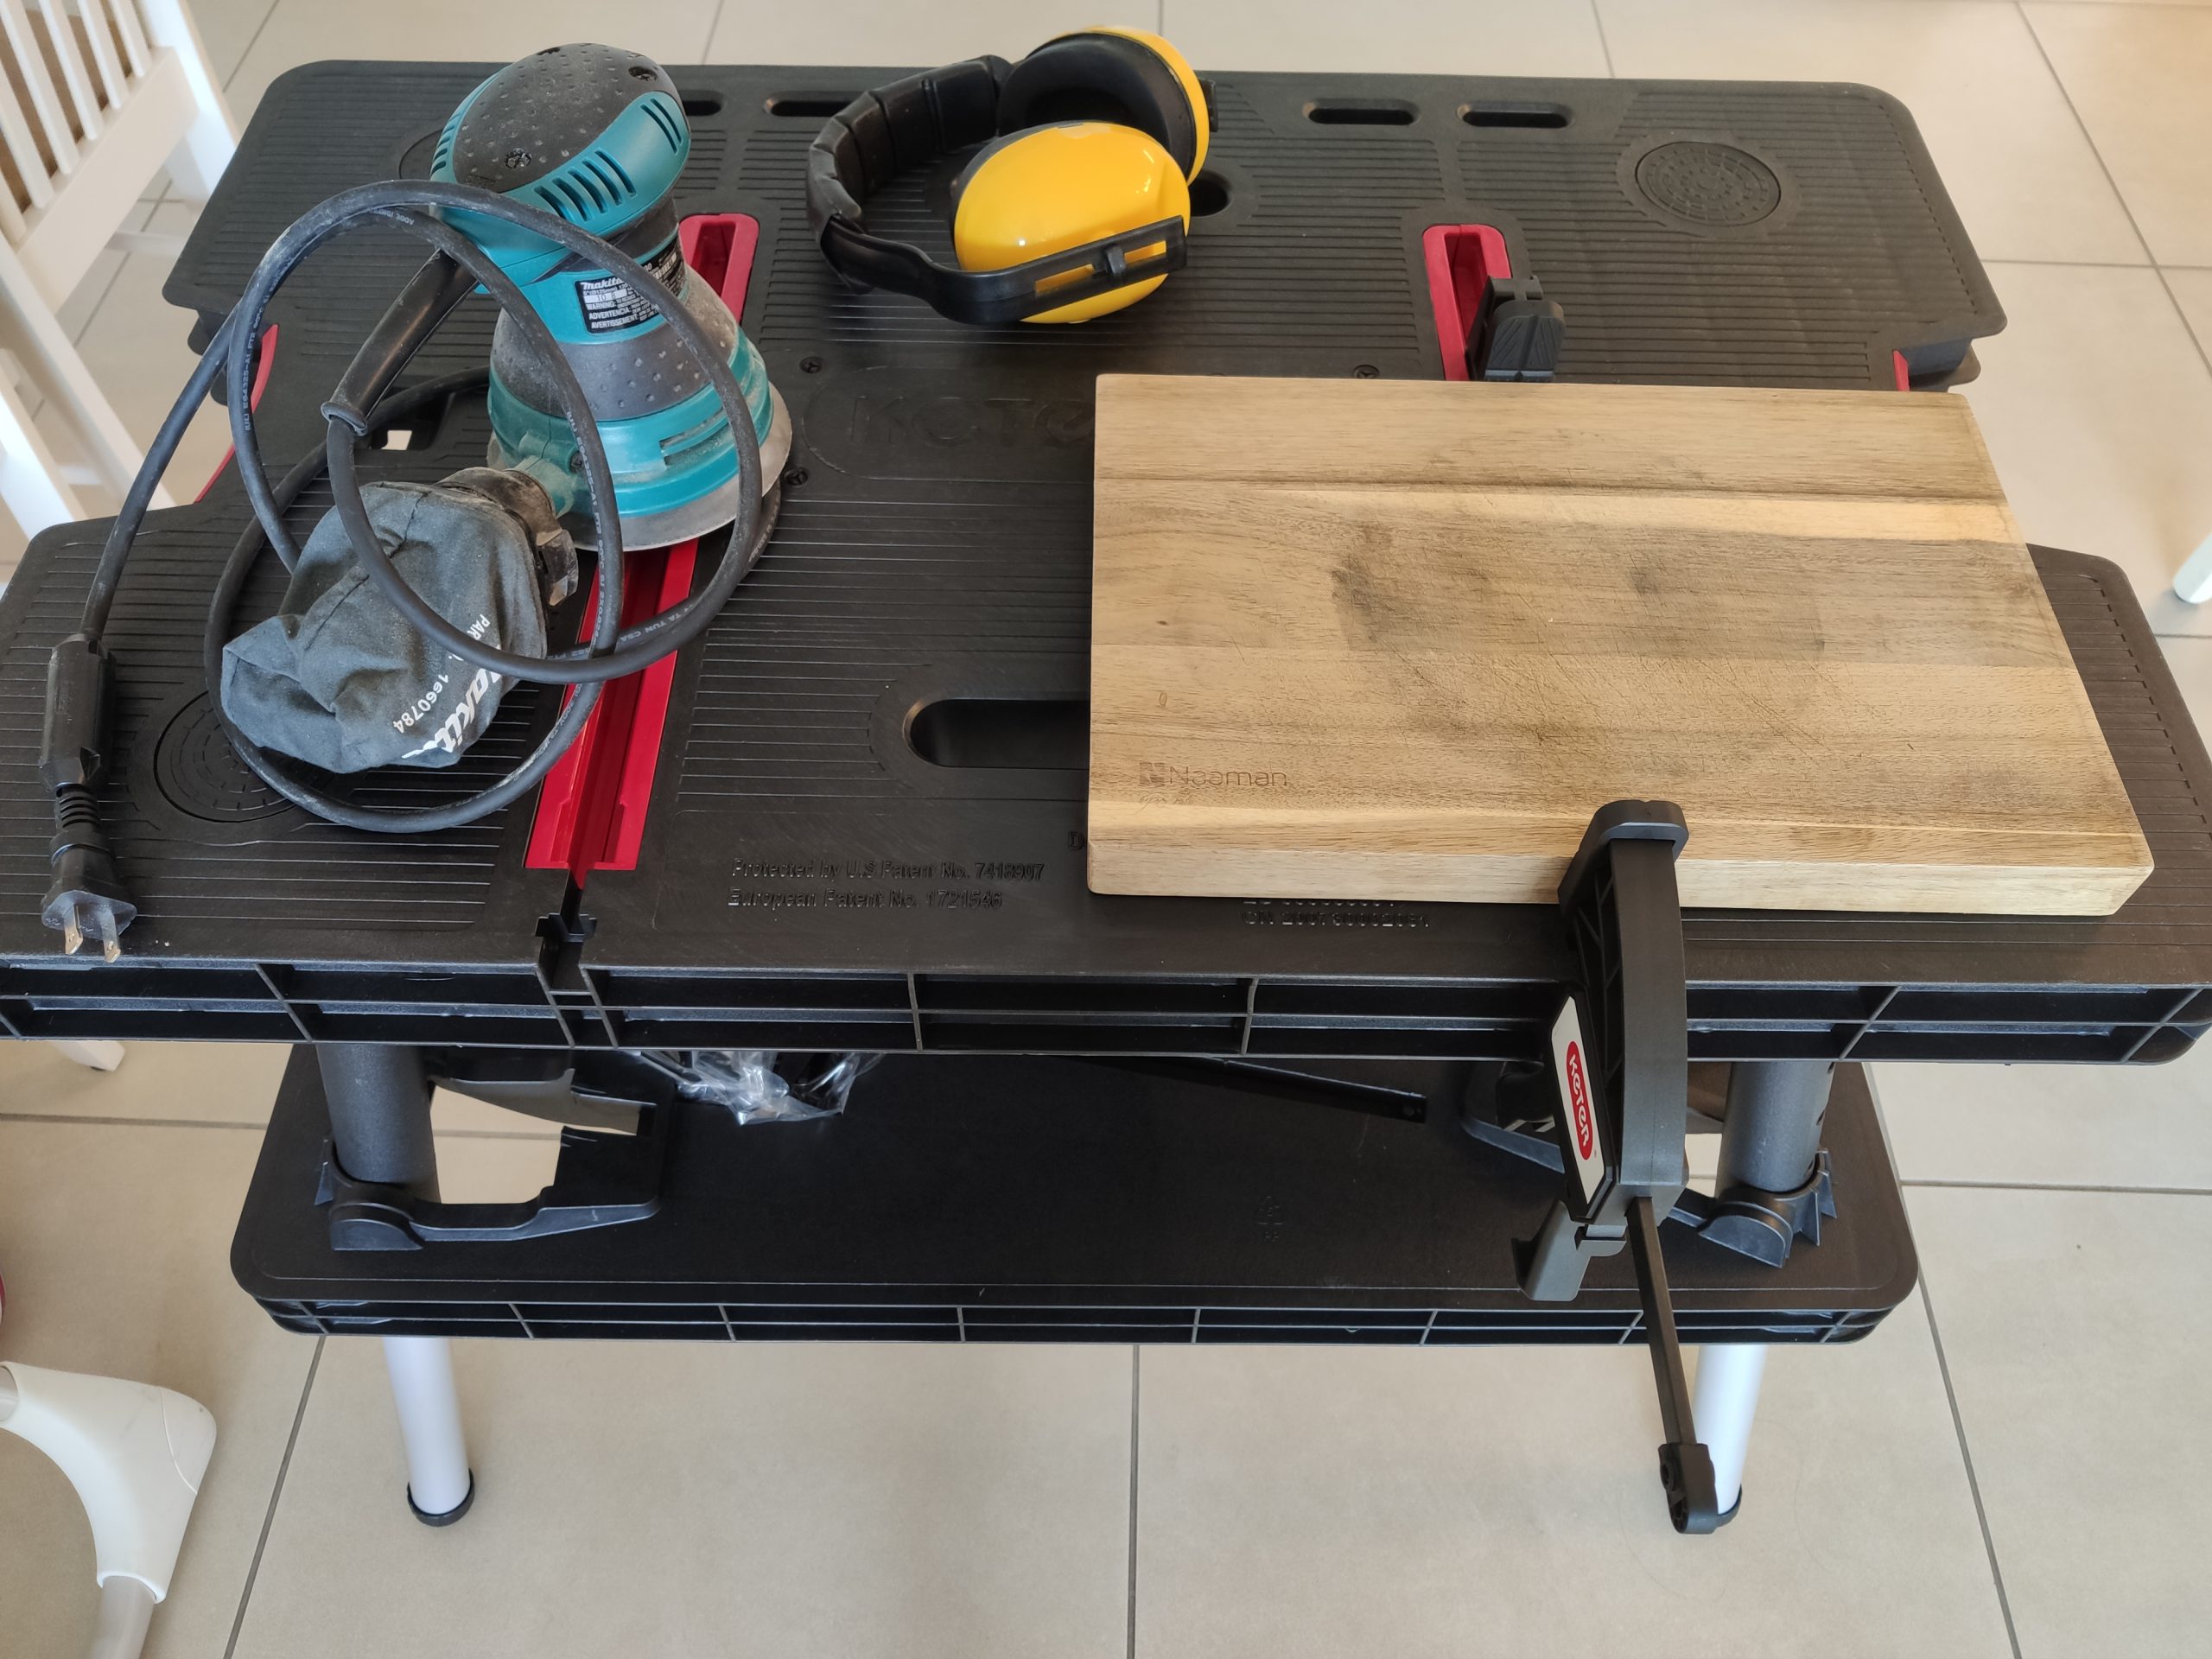 שולחן עבודה מתקפל דגם Keter PRO עם זוג כליבות + סקירת וידאו